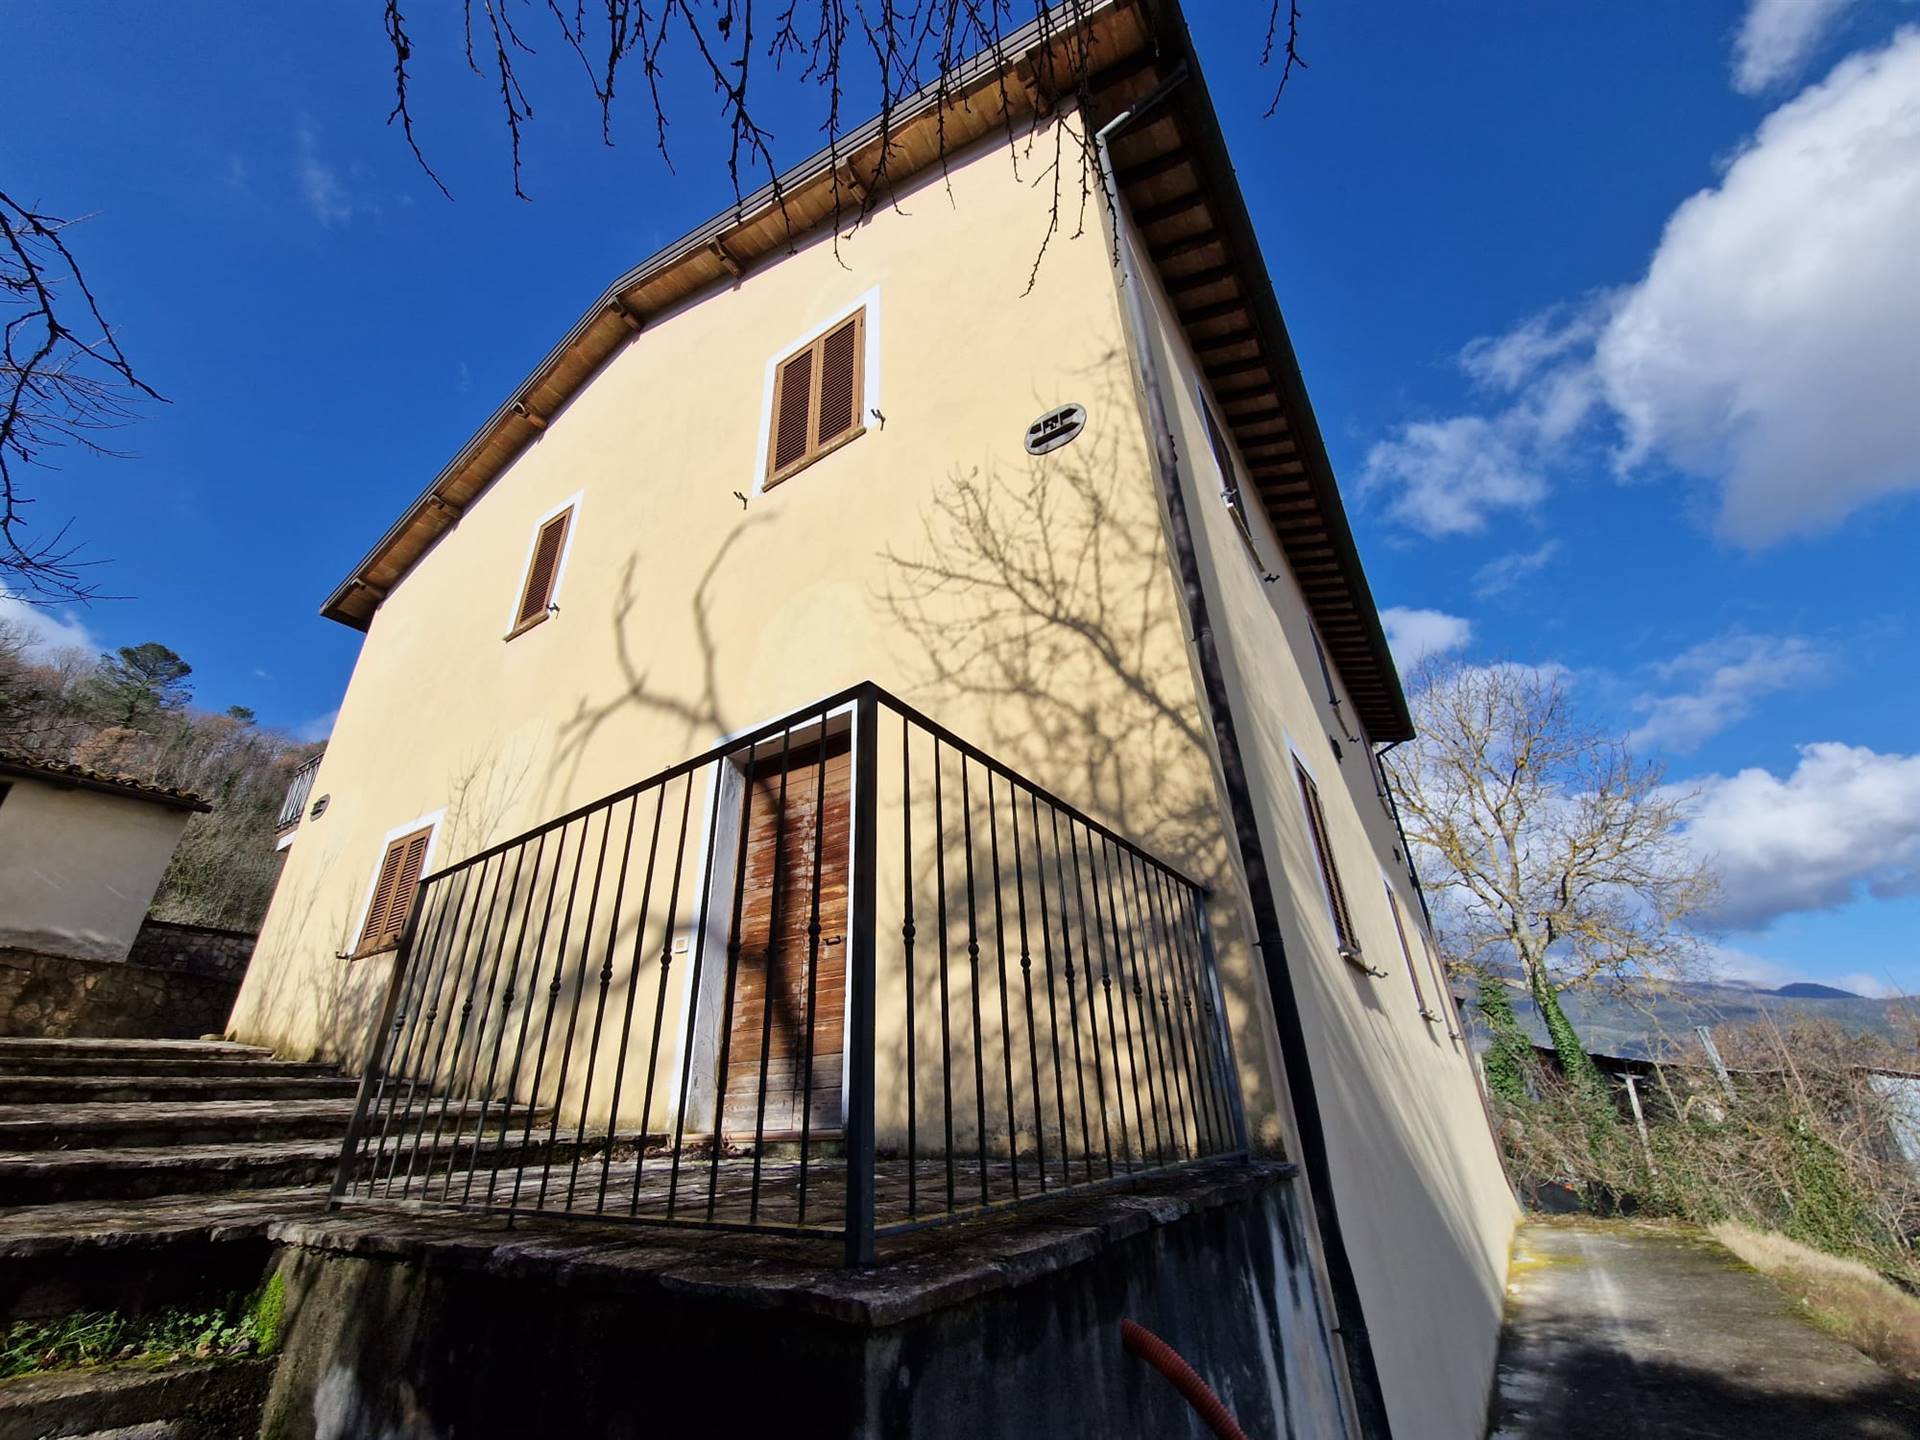 Rustico / Casale in vendita a Spoleto, 6 locali, zona Località: PERIFERIA, prezzo € 345.000 | CambioCasa.it